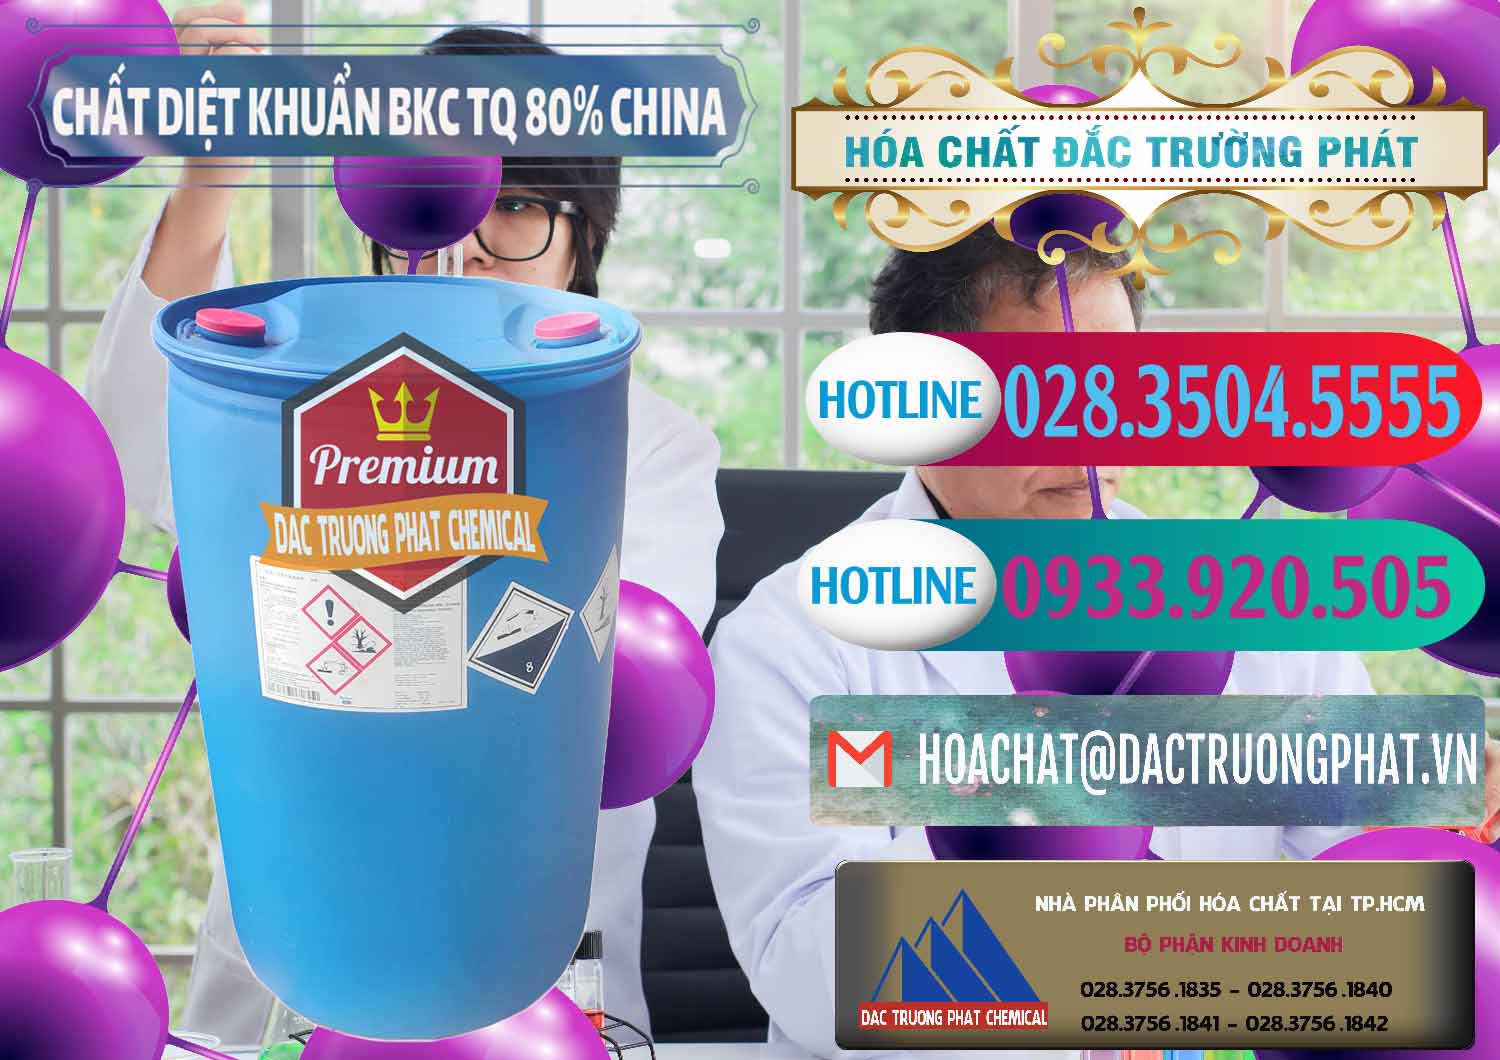 Cty chuyên cung ứng - bán BKC - Benzalkonium Chloride 80% Trung Quốc China - 0310 - Cty cung cấp ( kinh doanh ) hóa chất tại TP.HCM - truongphat.vn